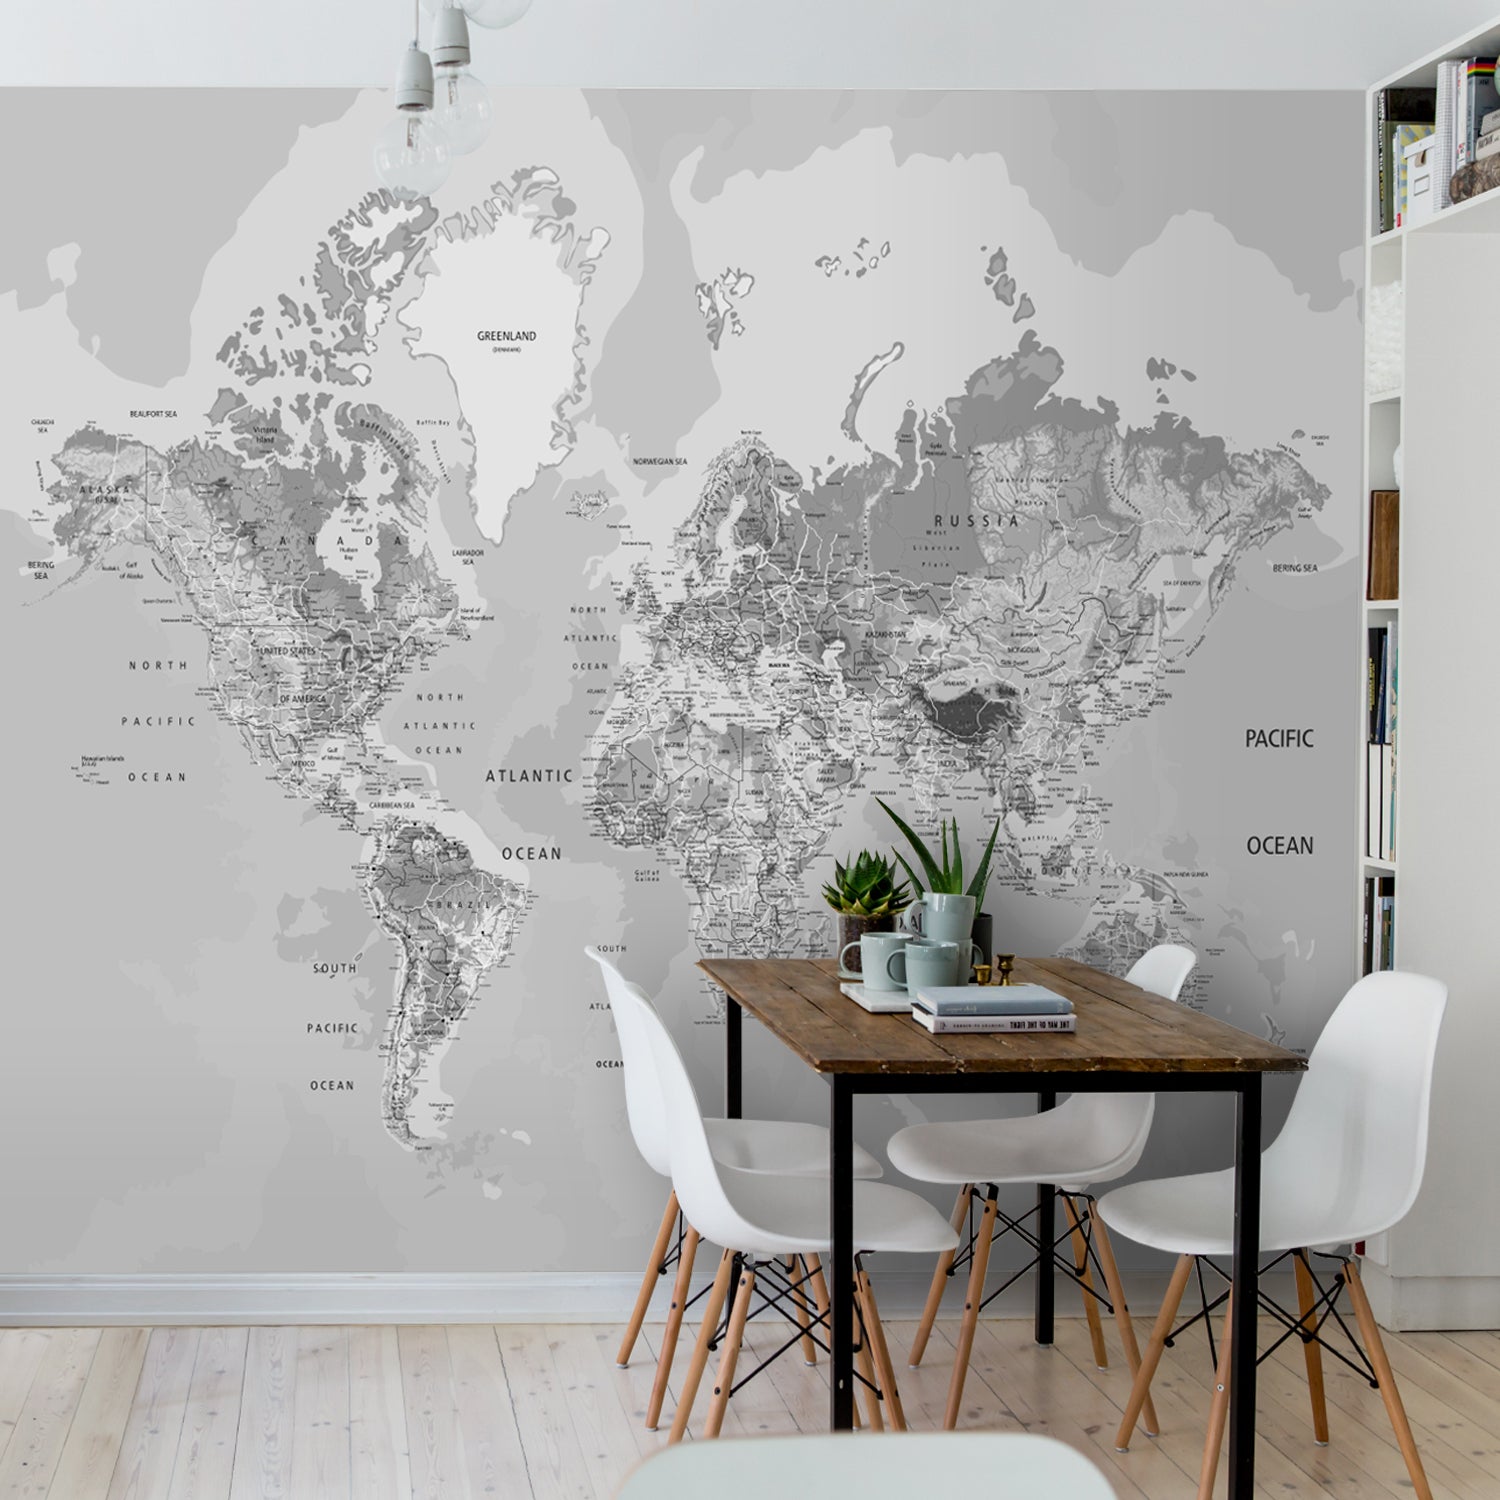 Adesivo de Parede com Mapa Mundi Gigante - BLACK & WHITE Preto e Branco